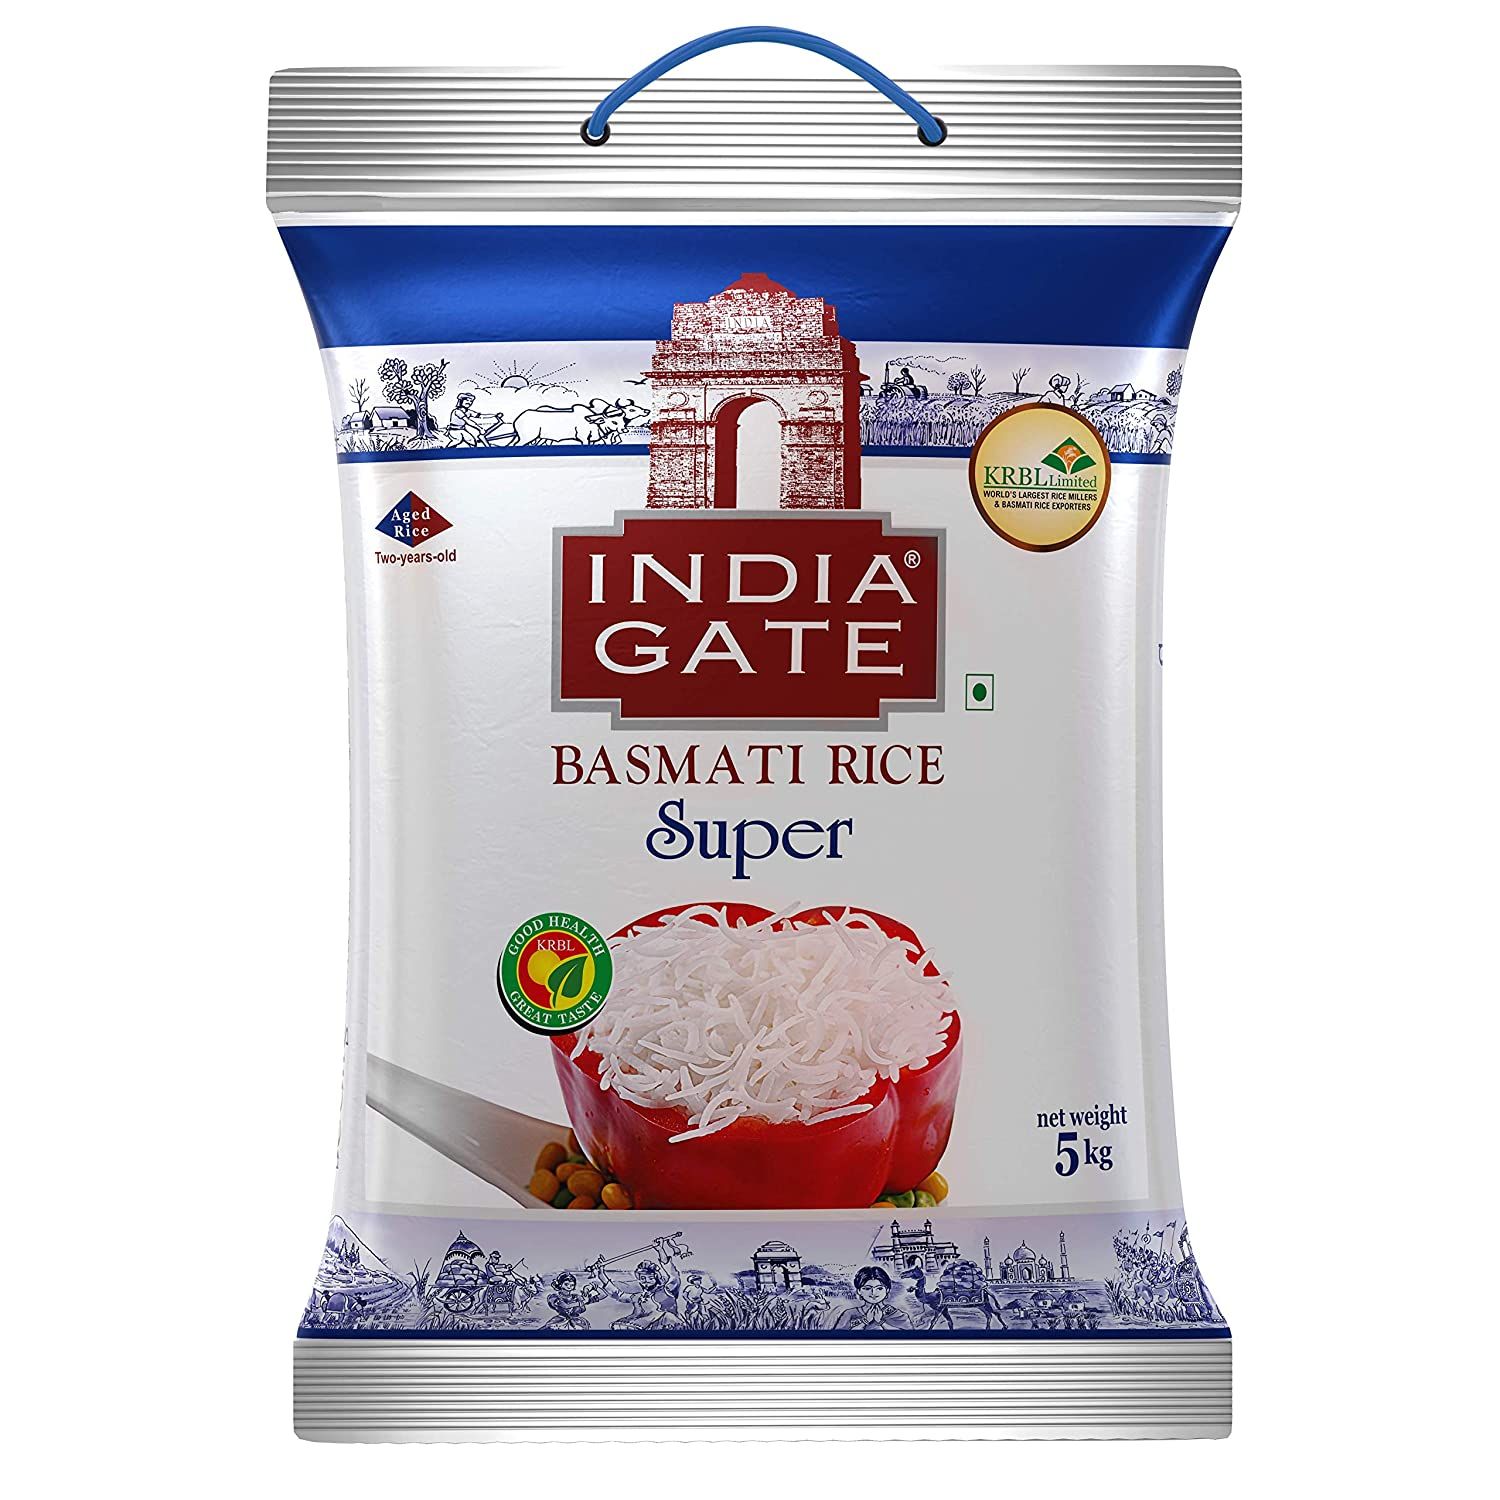 India Gate Basmati Rice Image